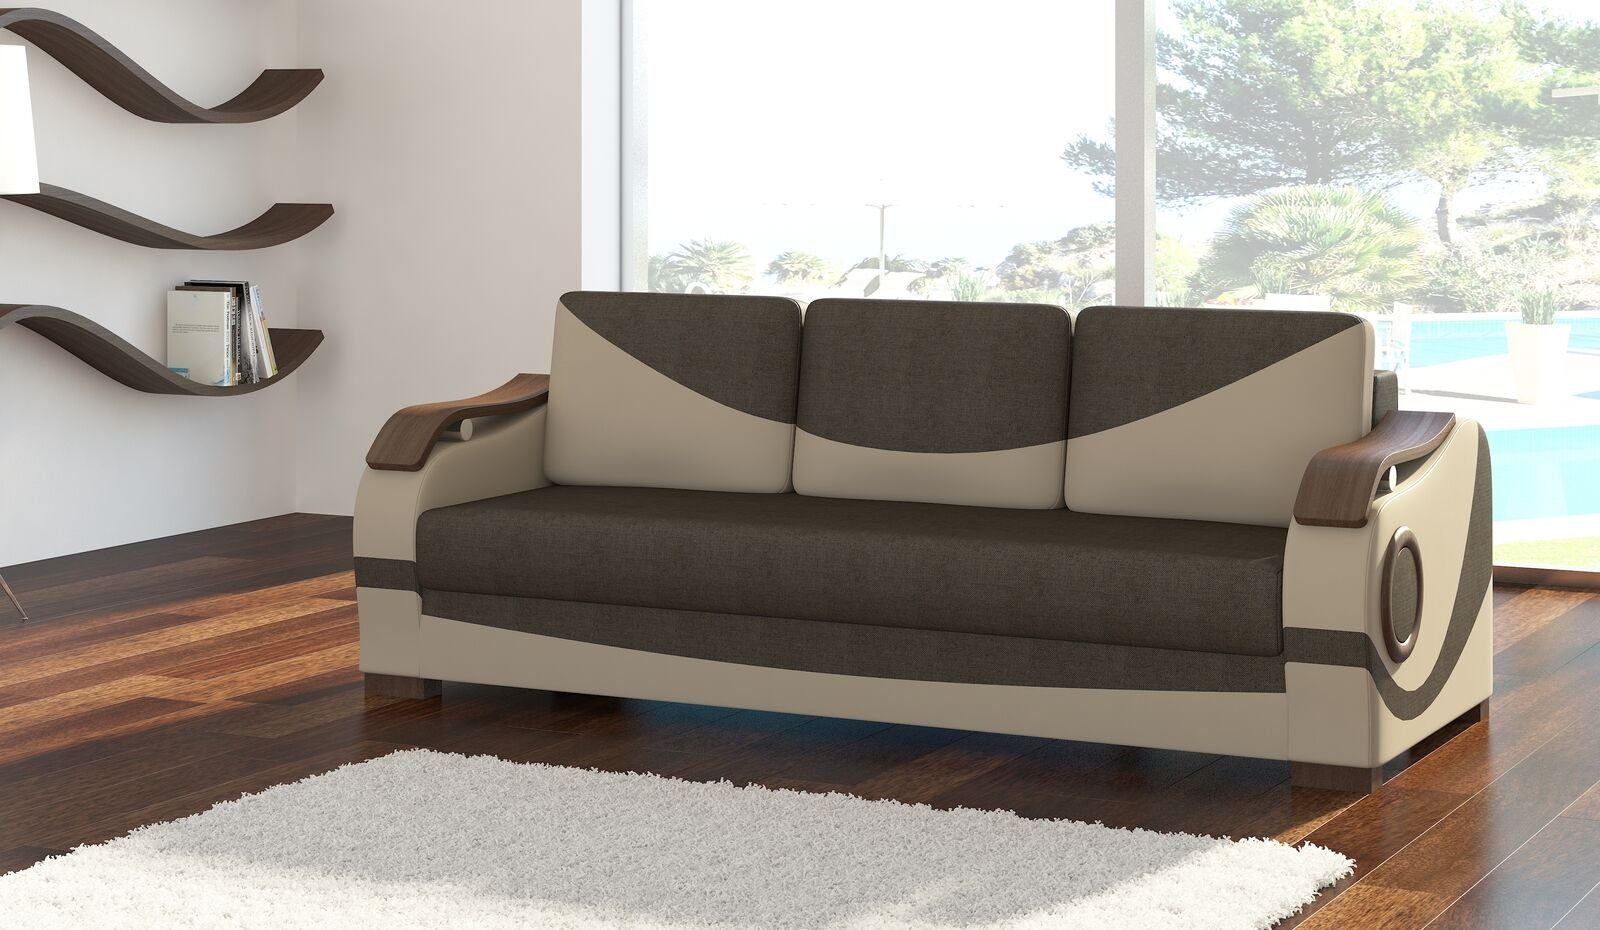 JVmoebel Braun/Beige Set mit Europe Puerto Polster in Sofa Couch Sofagarnitur Made Sofas, Bettfunktion 3+1+1